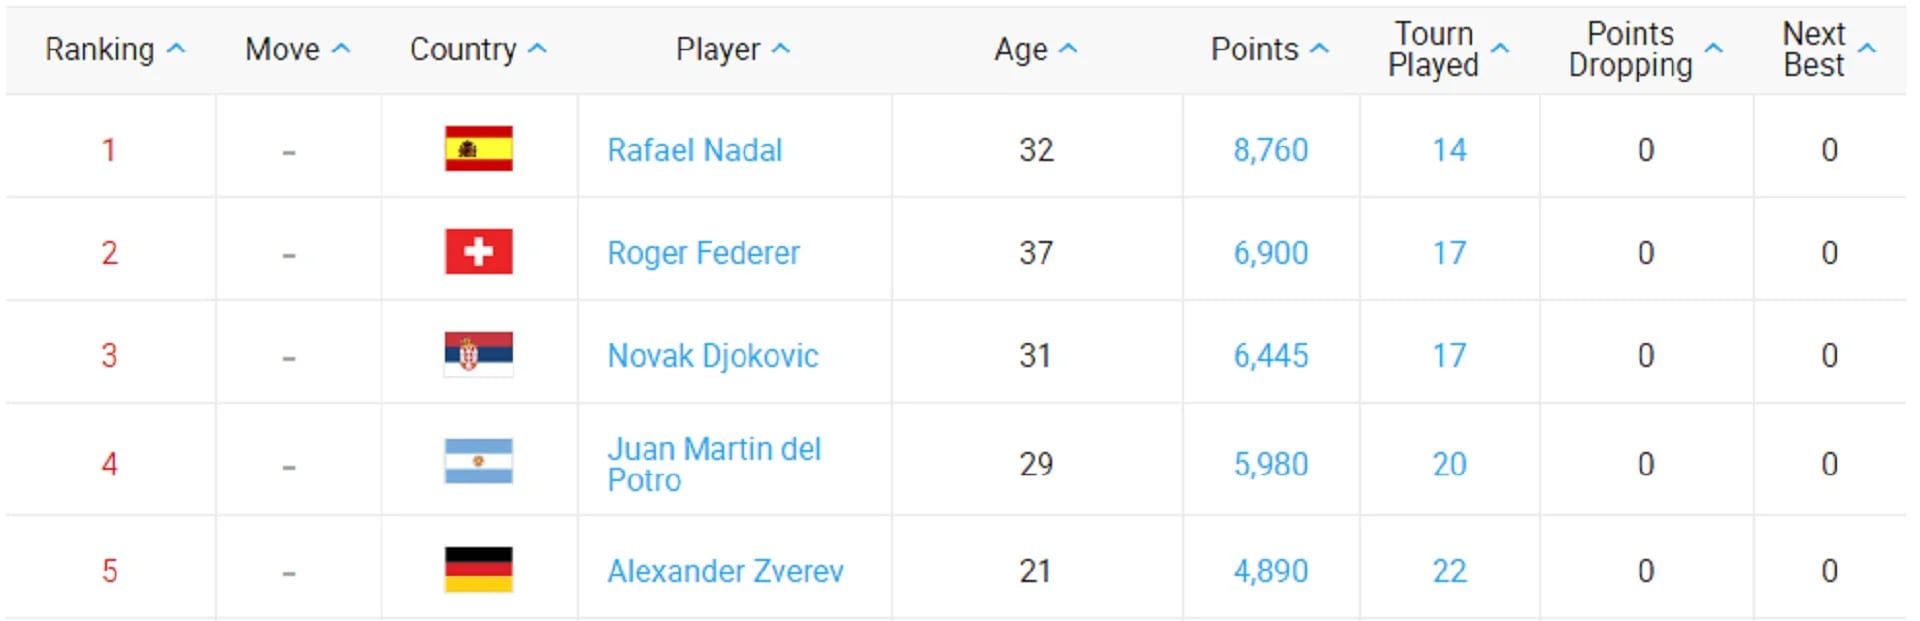 El ranking actual con Nadal, Federer, Djokovic, Del Potro y Zverev en los primeros cinco lugares